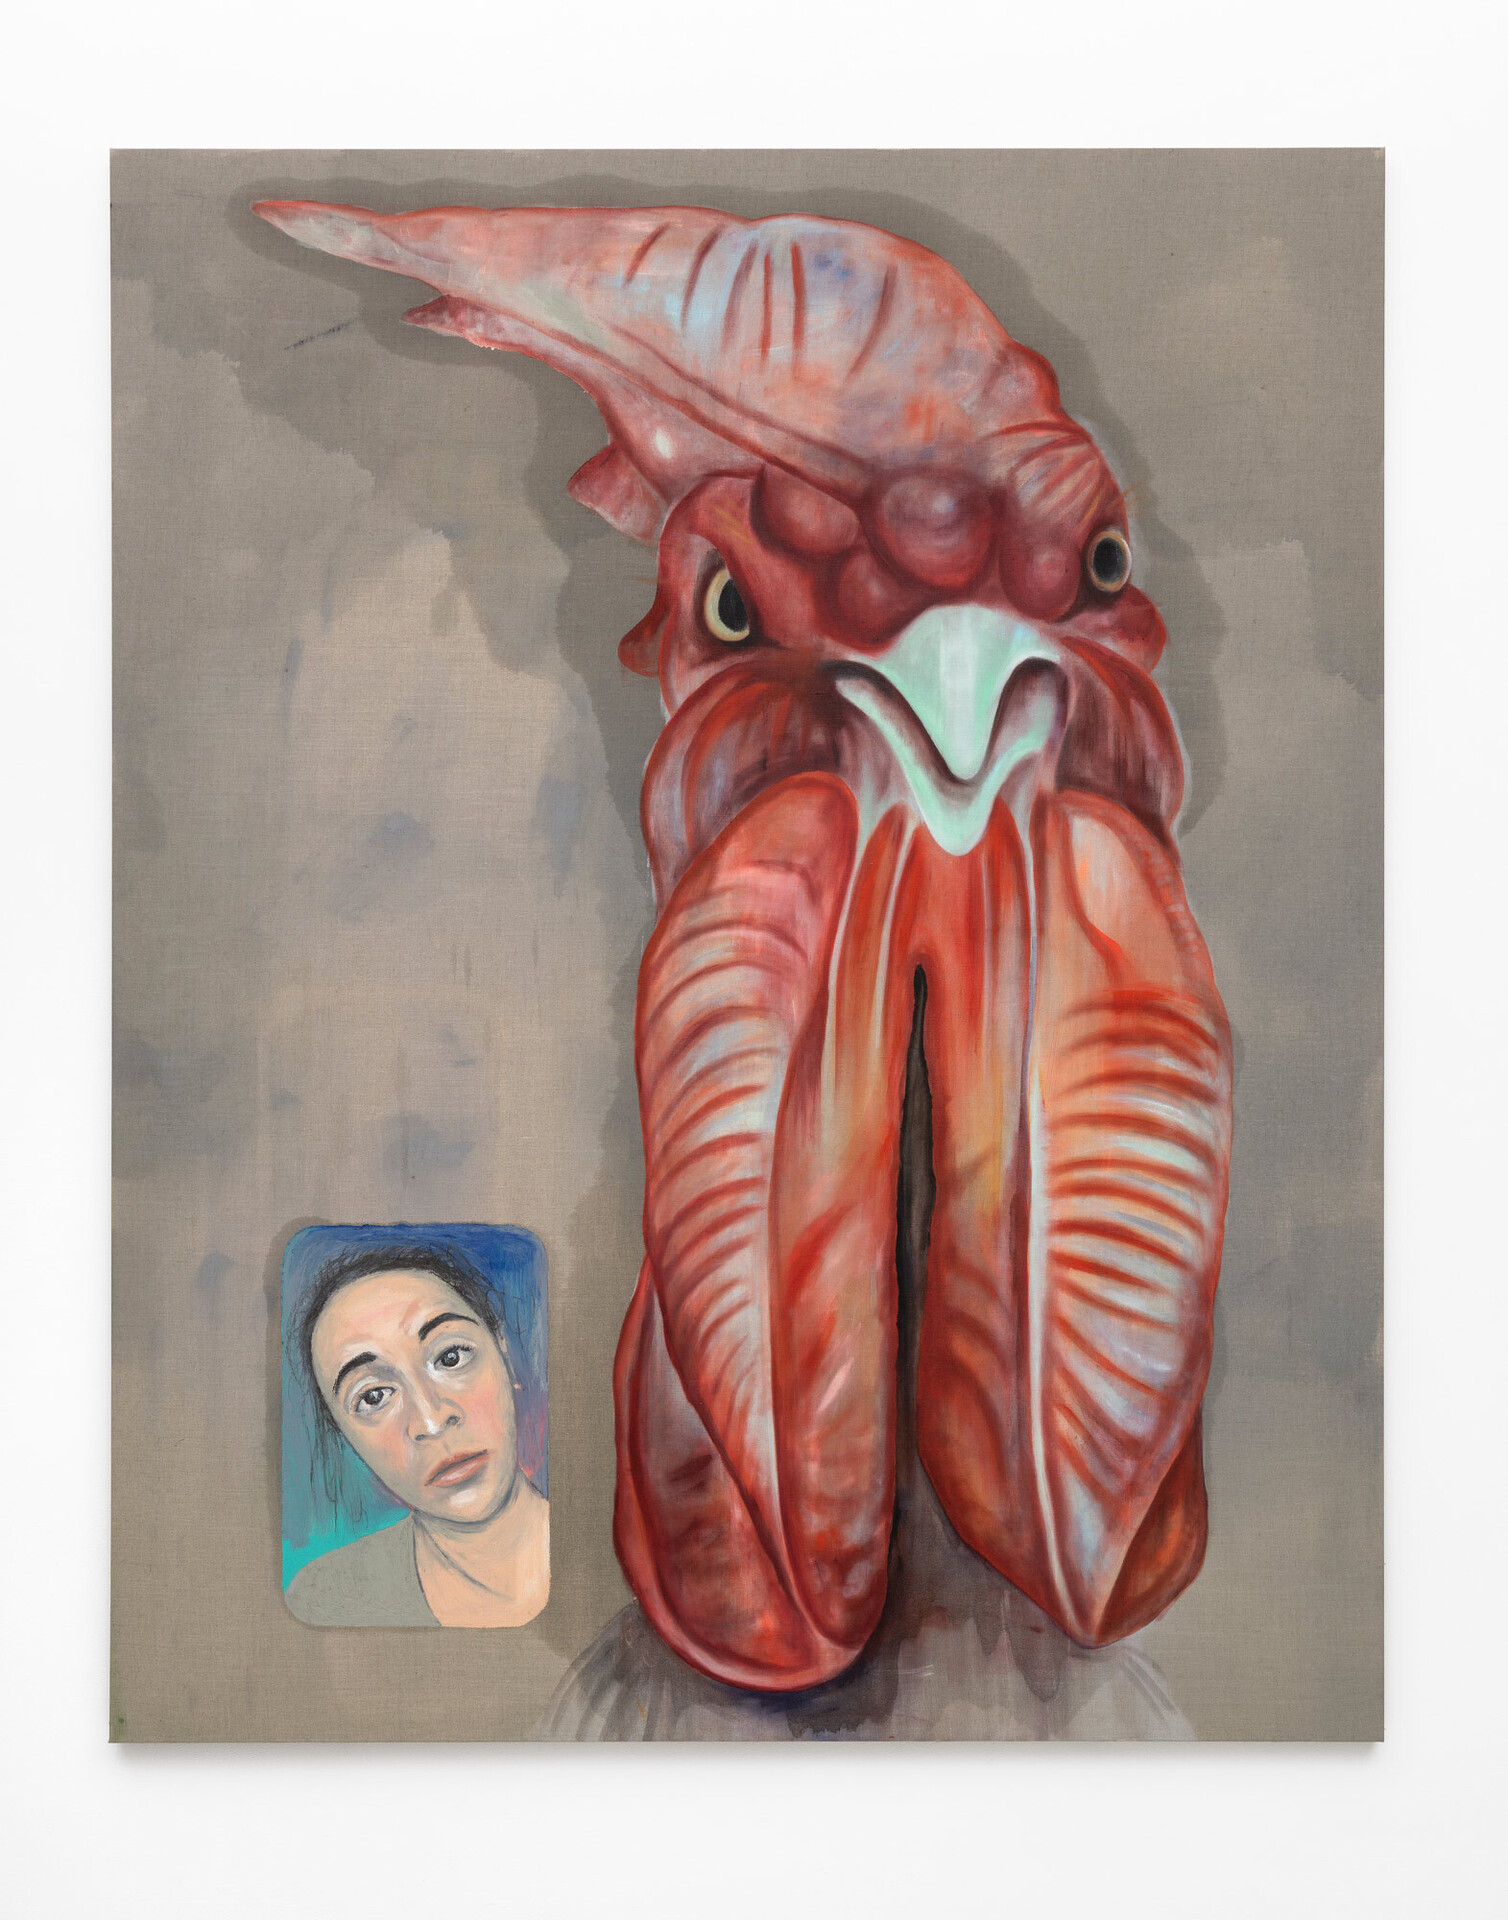 Jagoda Bednarsky, Gockel (Aramis), 2020, oil, gauche and acrylic on canvas, 200 x 160 cm